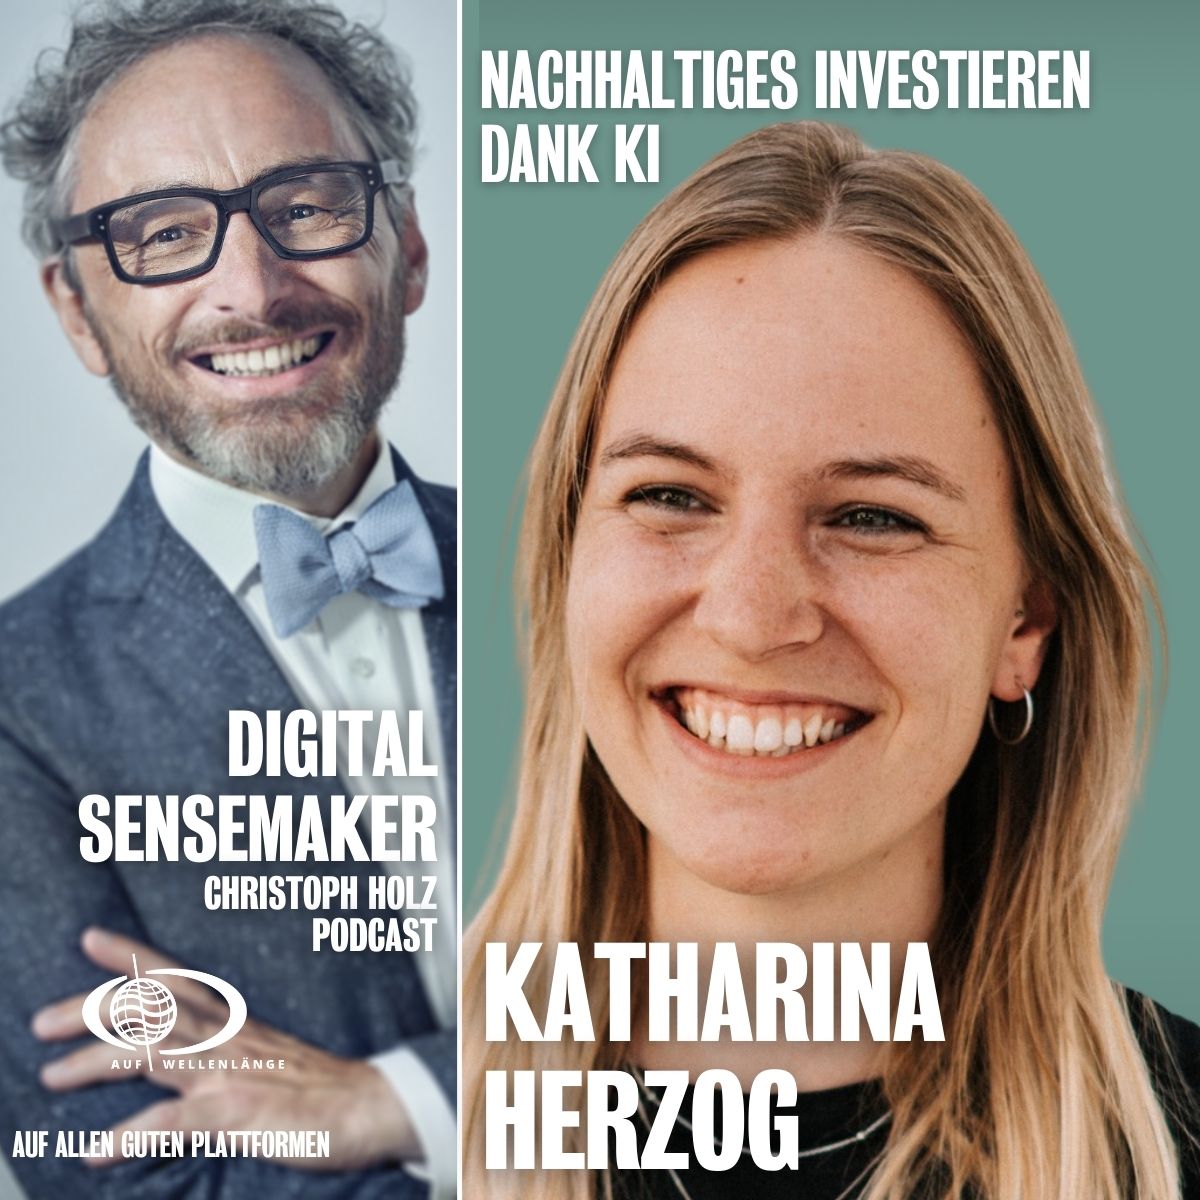 #127 “Nachhaltiges Investieren dank KI” mit Katharina Herzog, Co-Founder & CEO bei money:care